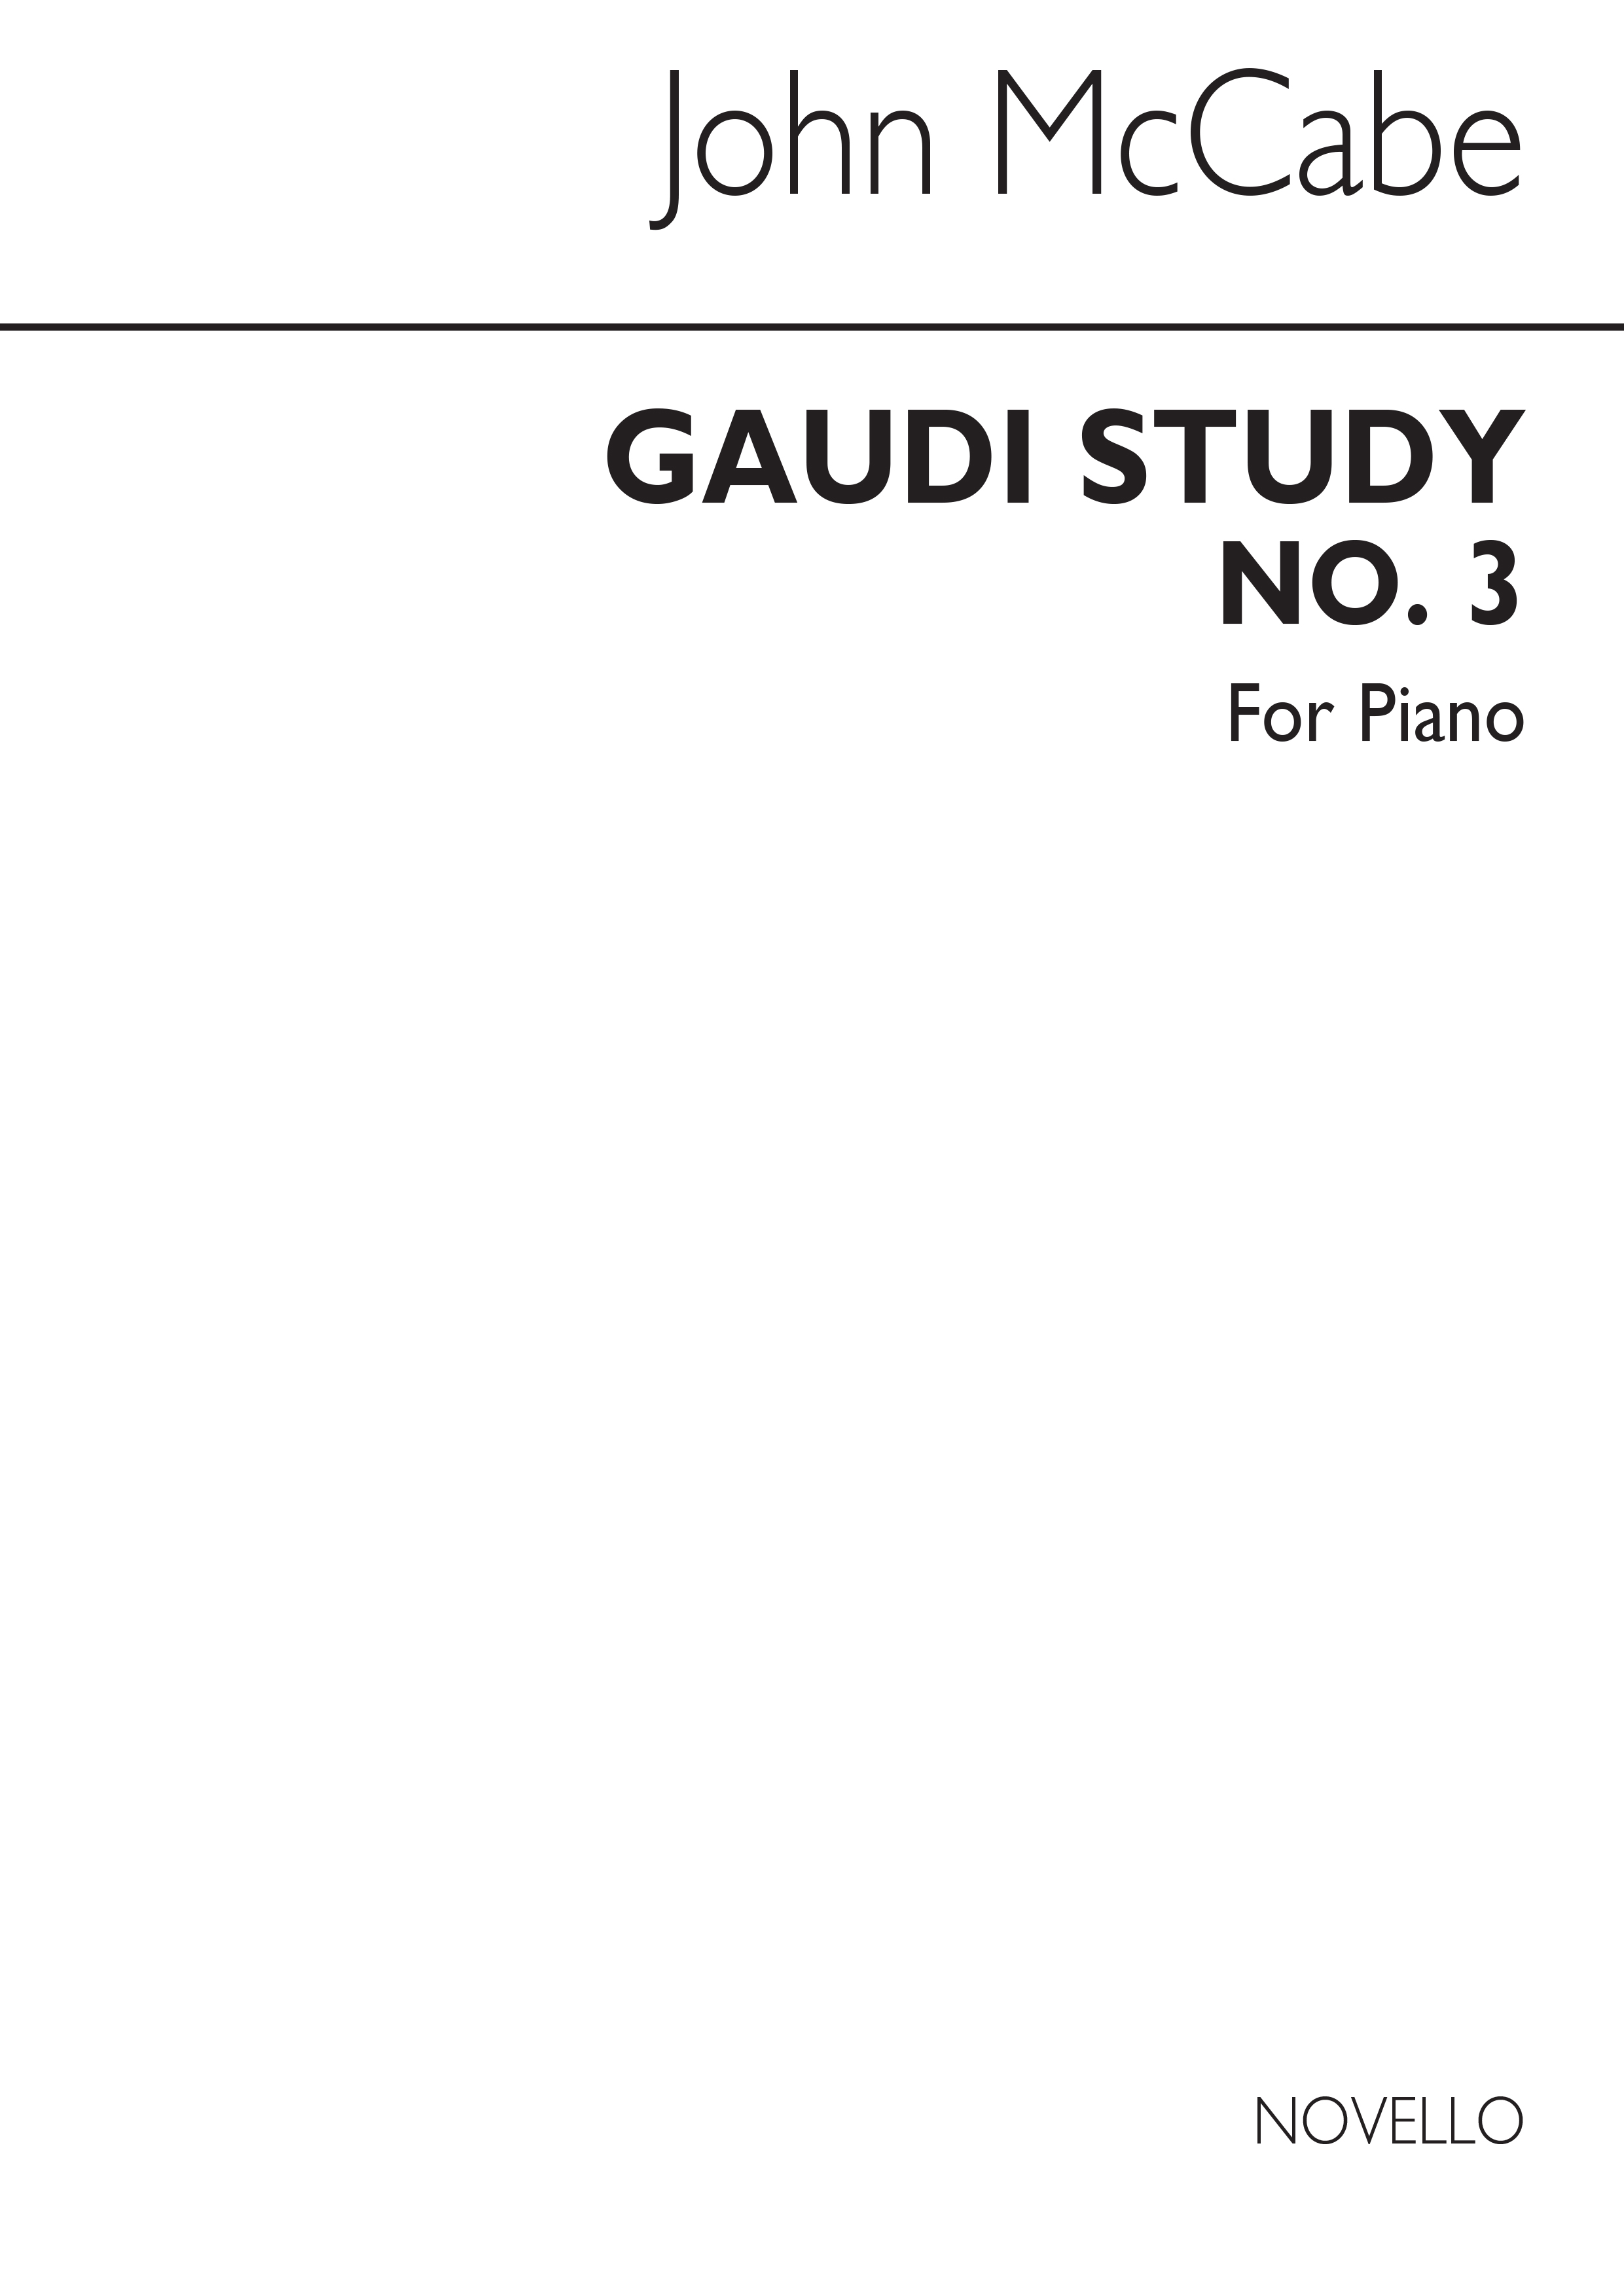 McCabe: Gaudi Study No.3 for Piano